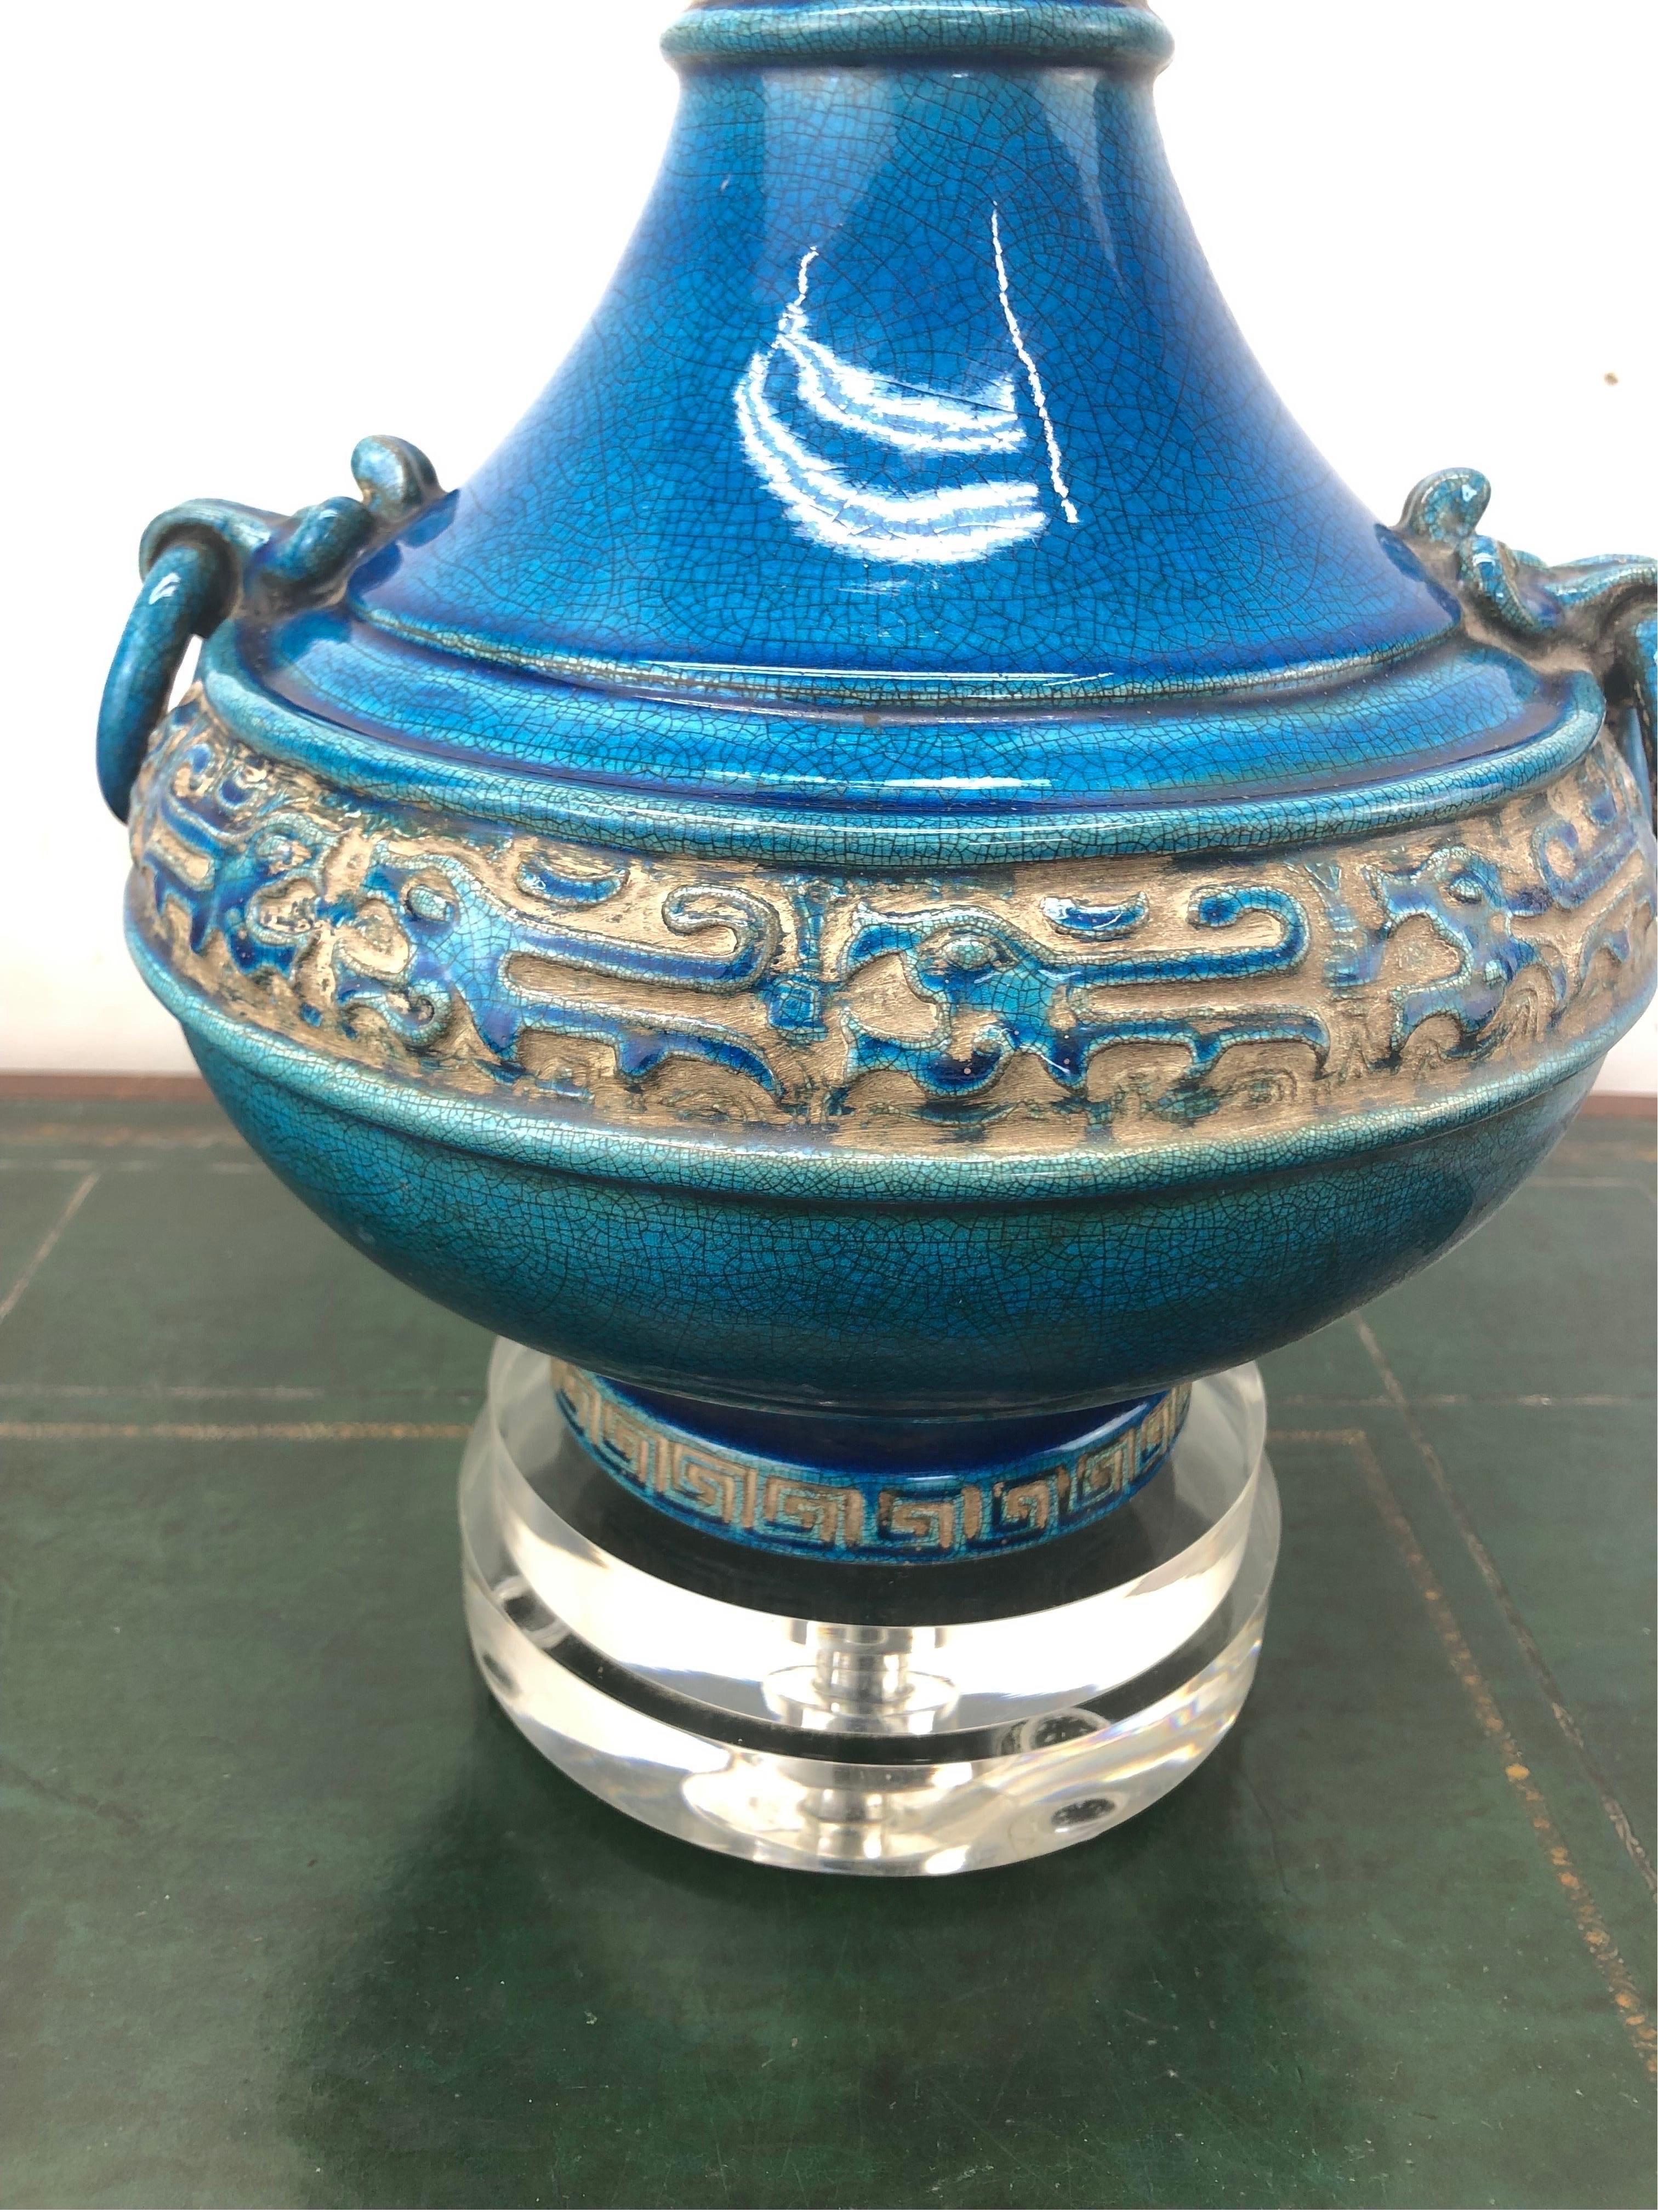 Lampe Vintage Italienne Glazed Chinoiserie Crackle Turquoise. Conçue pour imiter la porcelaine chinoise enfouie, la glaçure craquelée turquoise vibrante contraste joliment avec le design d'inspiration chinoise. Monté sur un double socle en lucite et